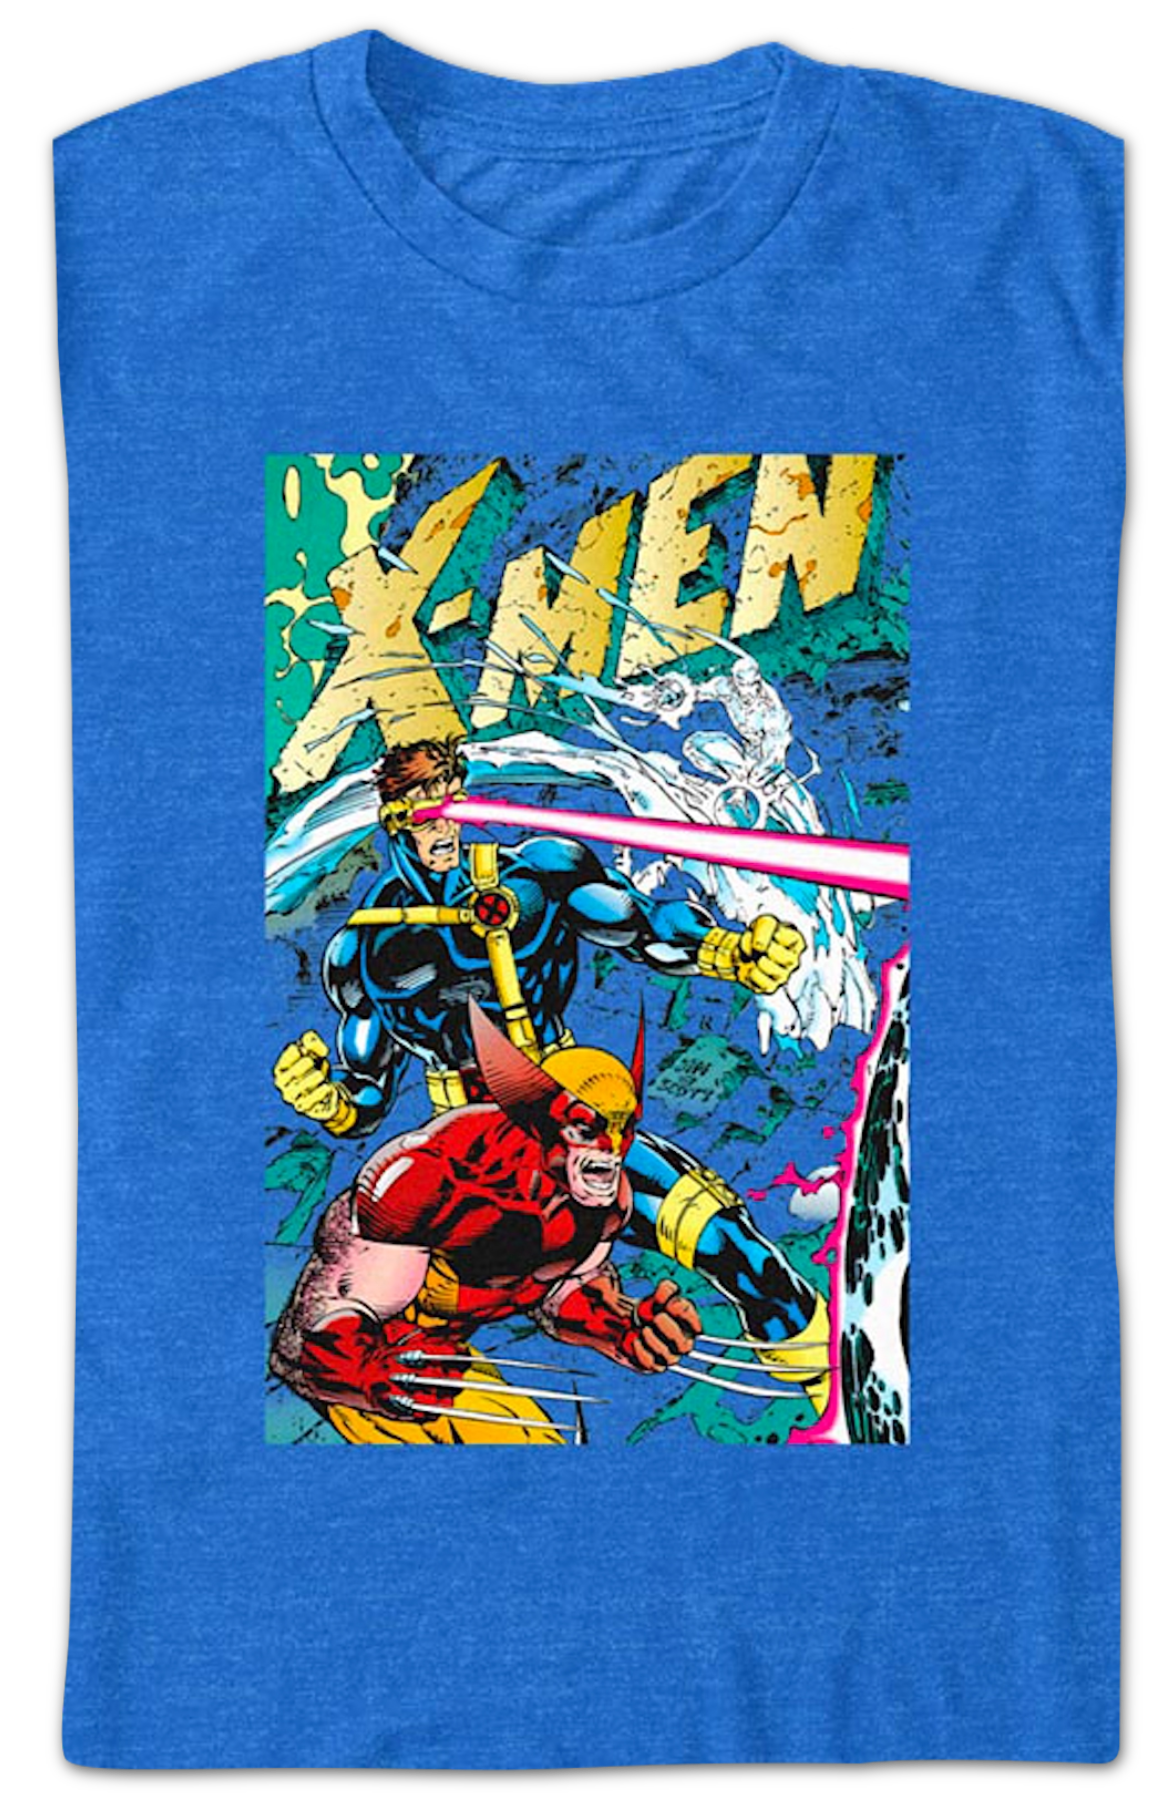 X-Men Vol. 2 #1 Marvel Comics T-Shirt